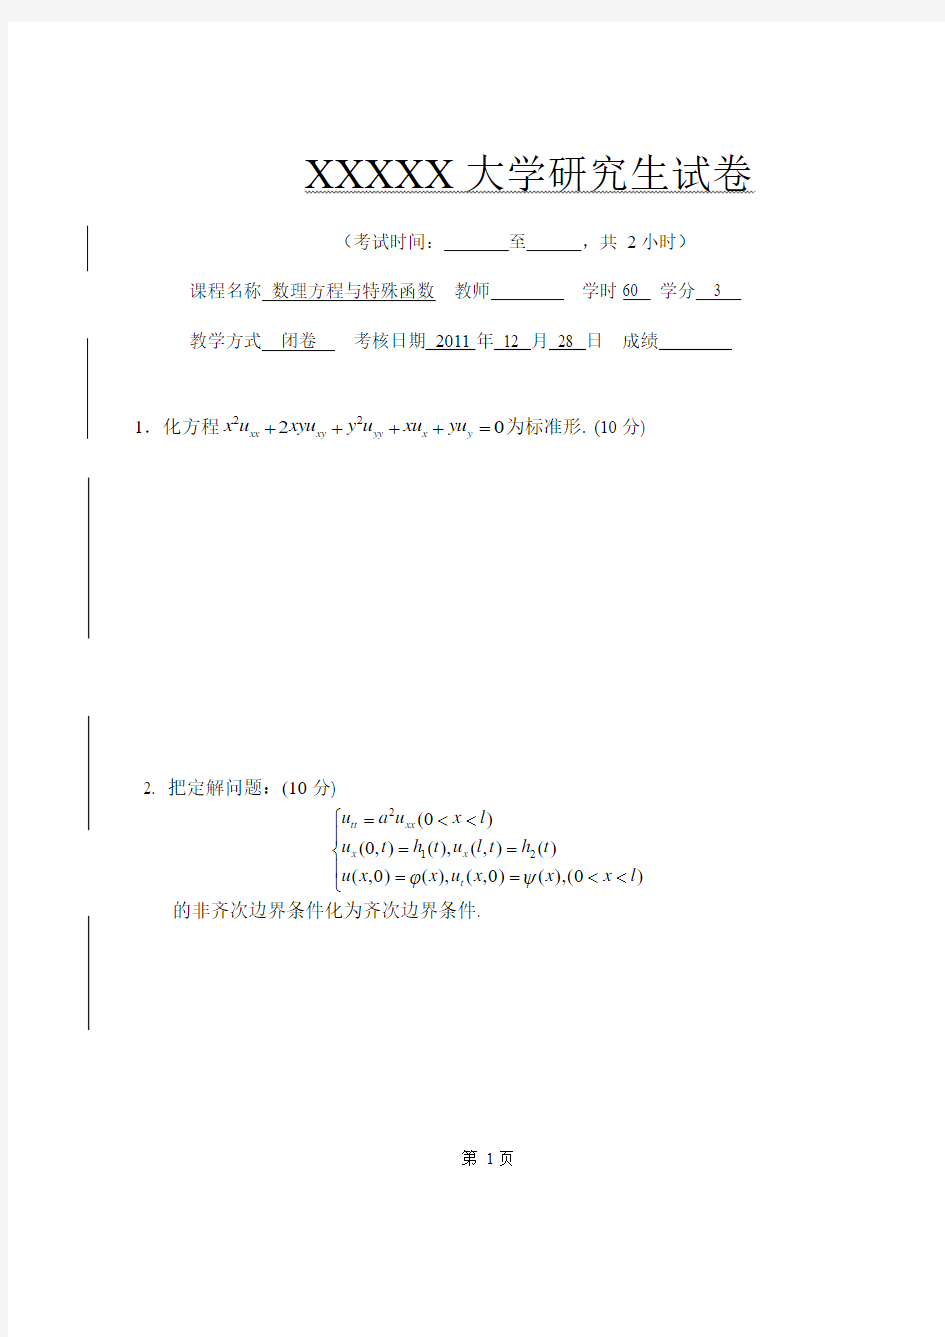 数学物理方程与特殊函数期末考试试题卷子2011